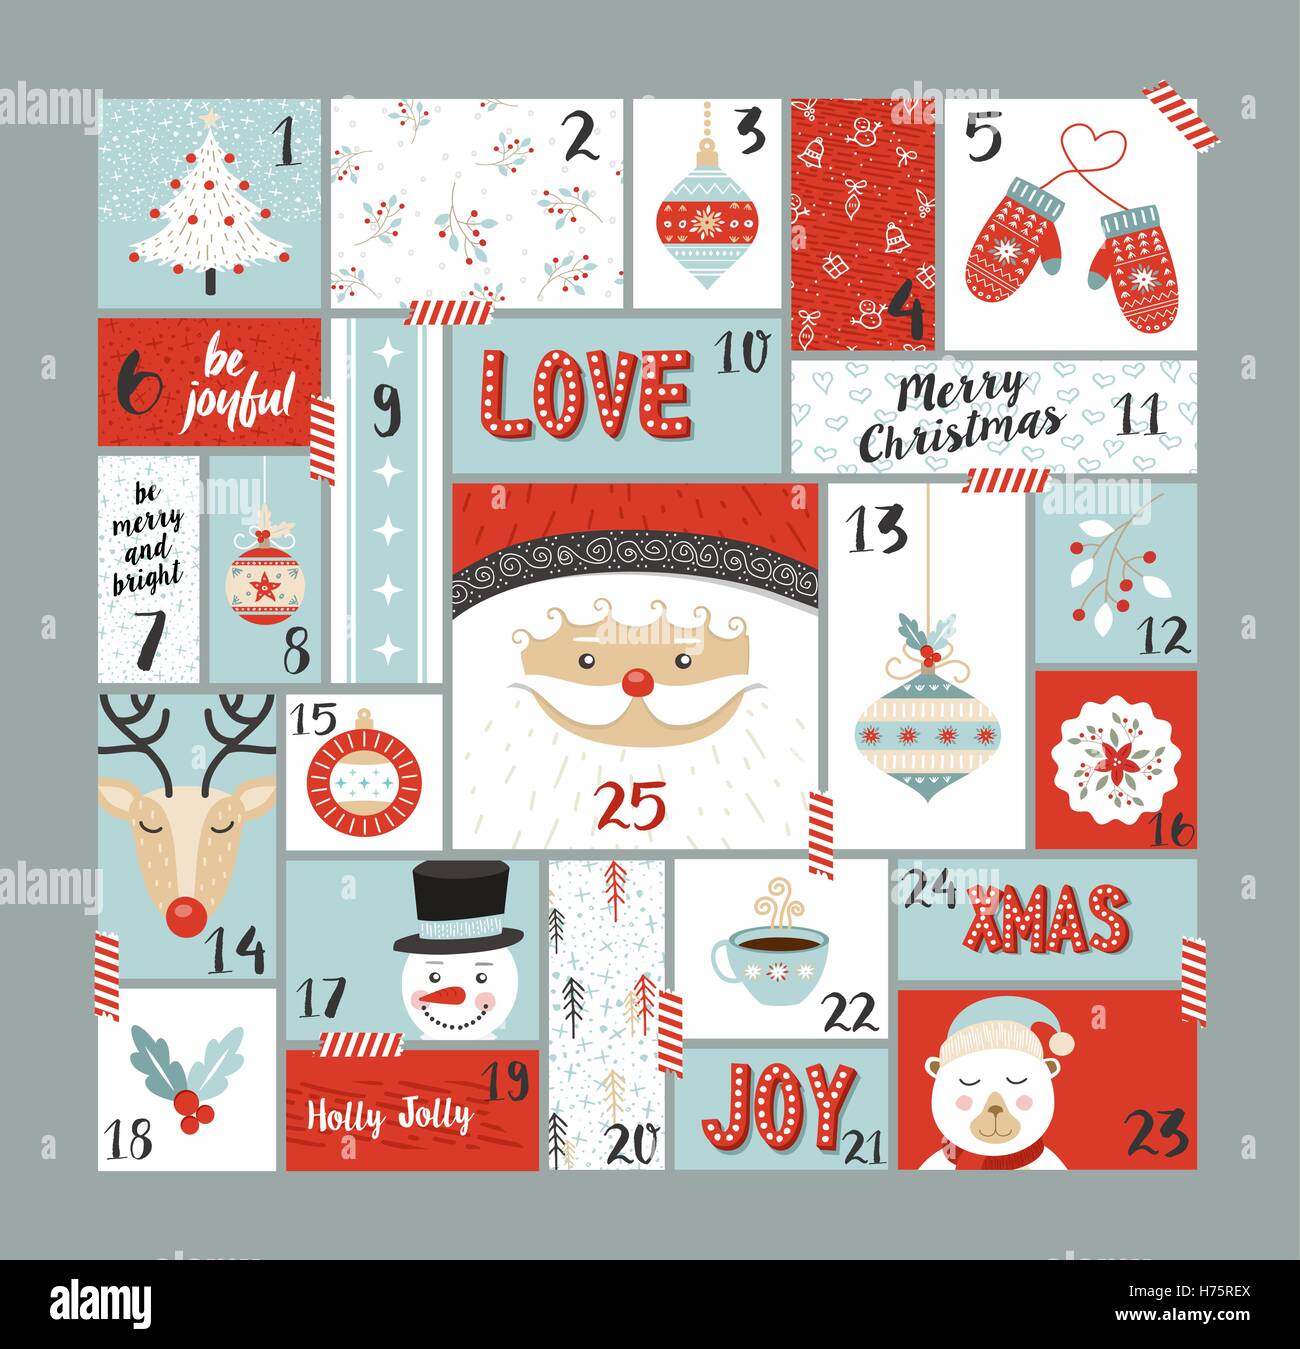 Calendario de adviento lindo Holiday decoración, cuenta regresiva para el día de navidad con Santa Claus, los renos, pinos y alegre temporada Ilustración del Vector